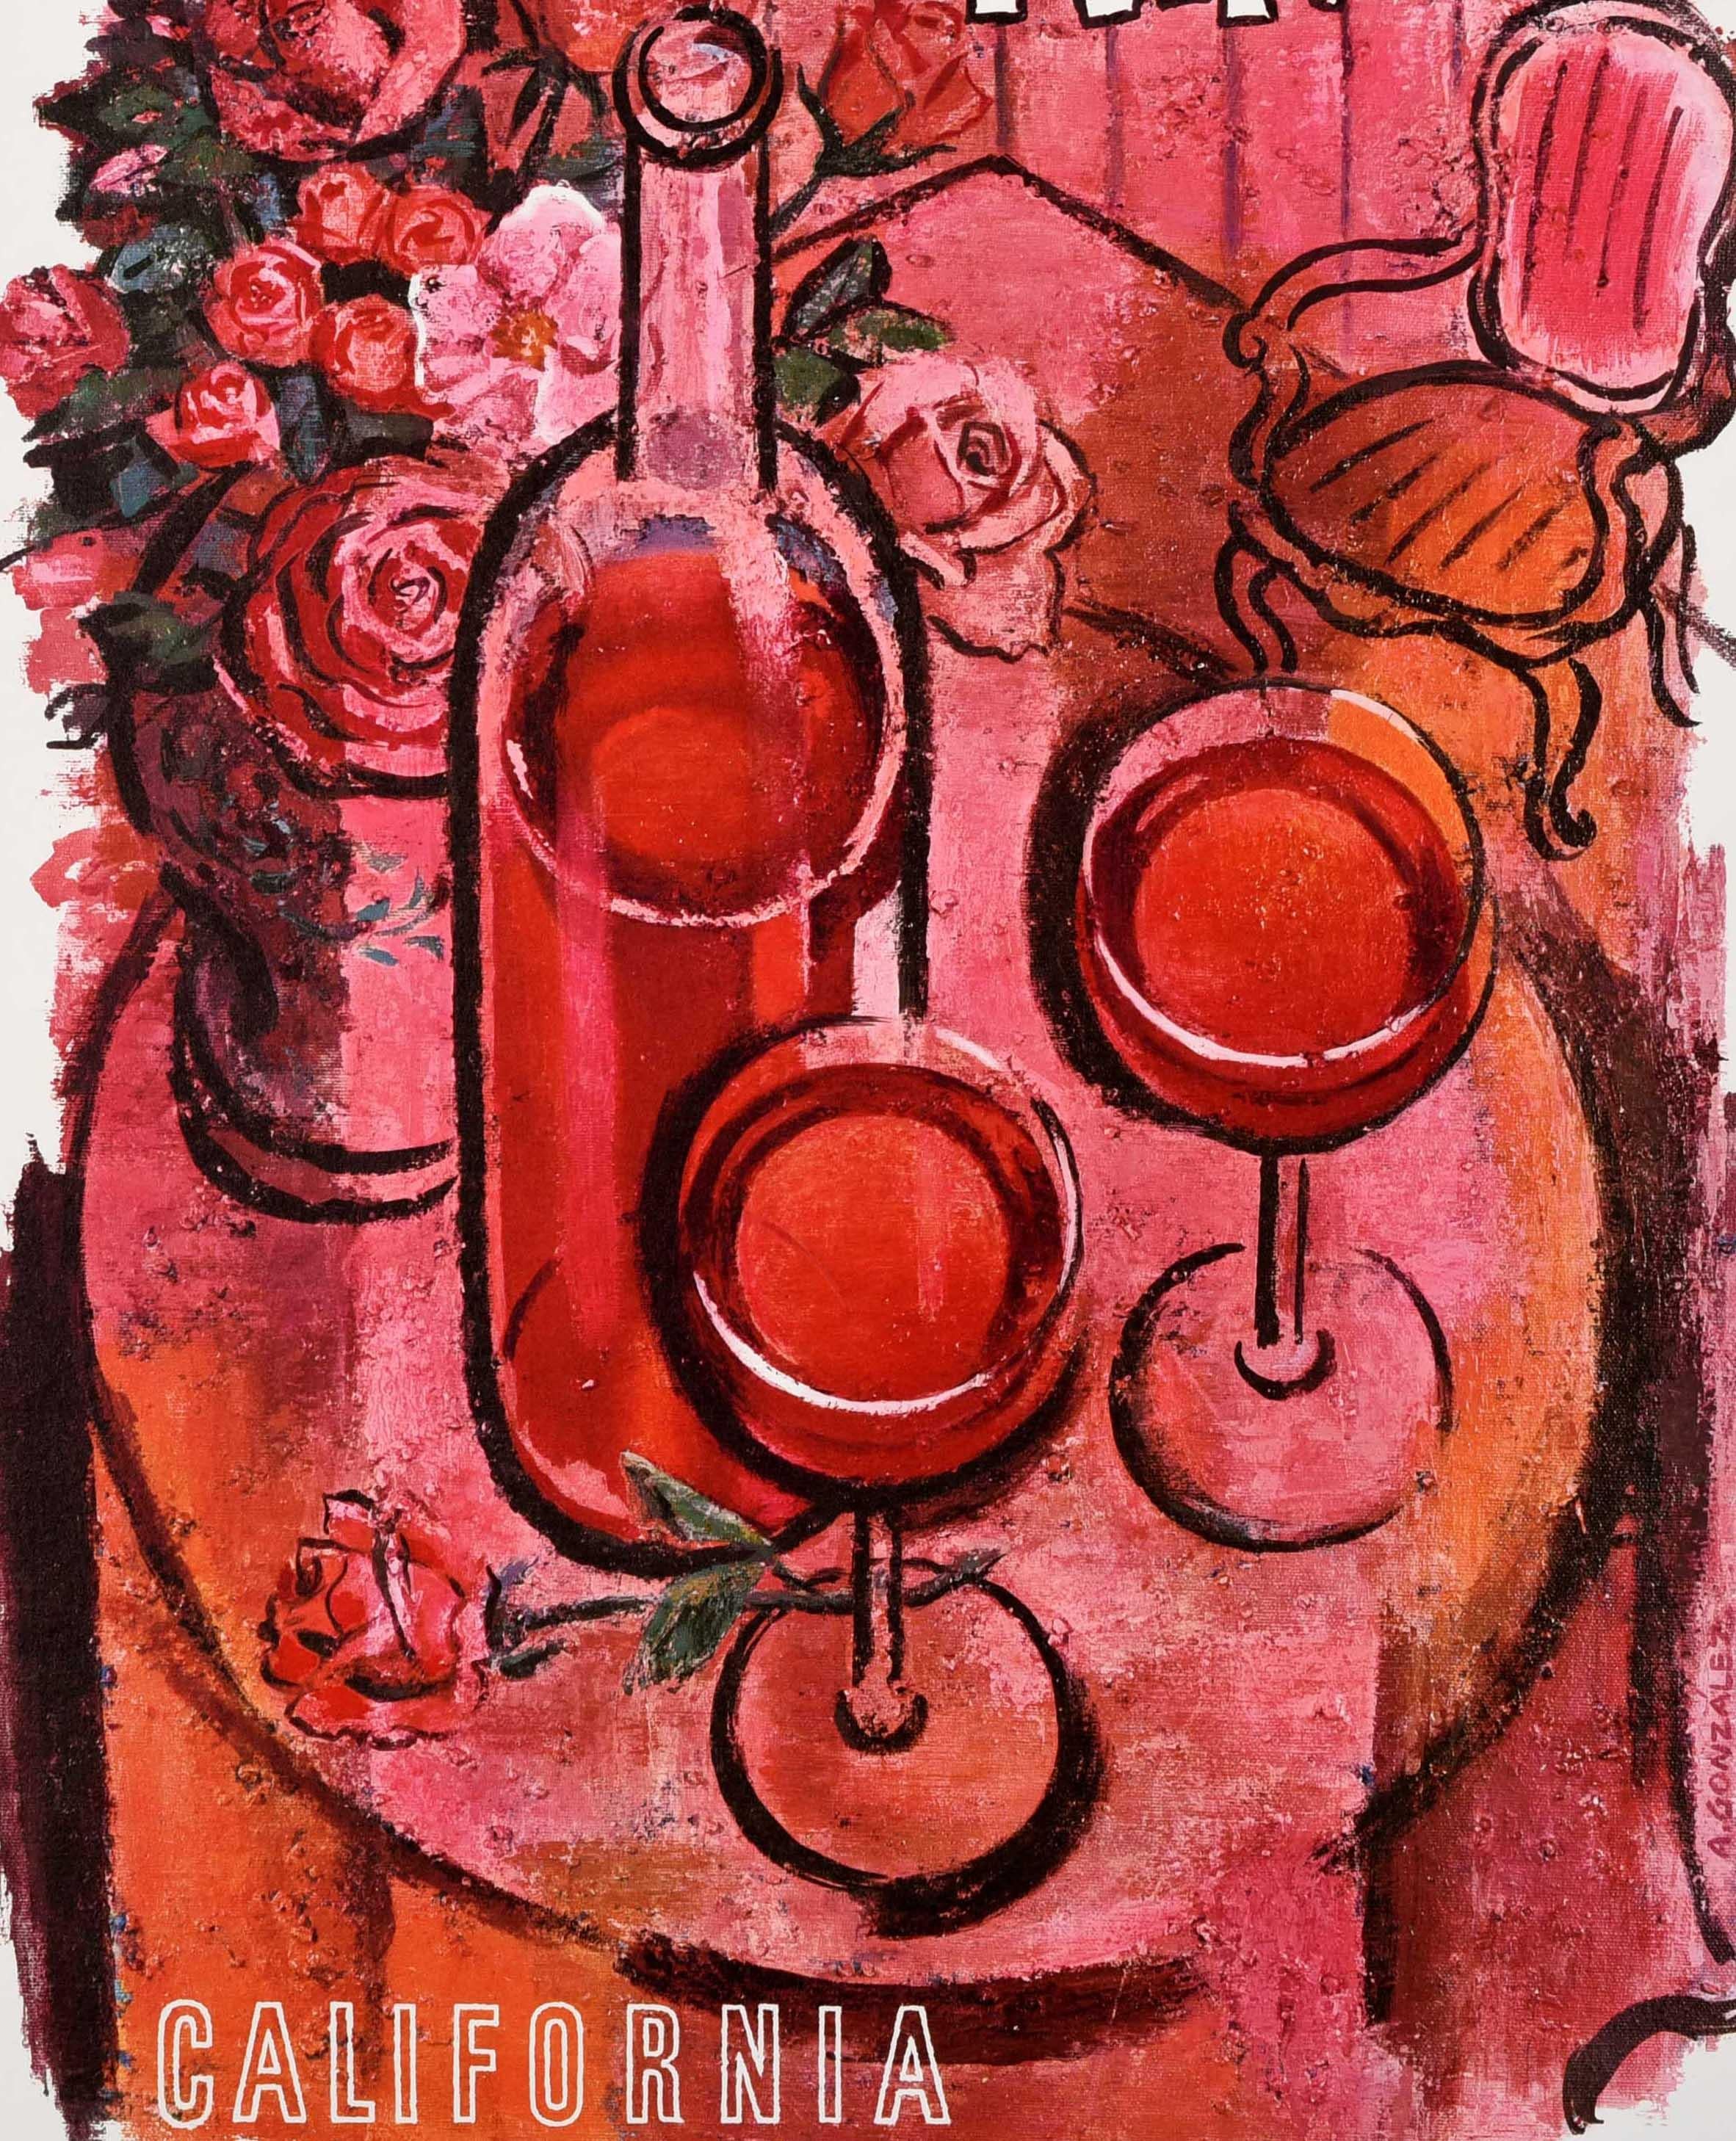 Affiche originale de publicité pour des boissons - Rose Wine California Land of America - représentant une bouteille et deux verres de vin avec un vase de roses roses sur une table, une fleur entre les verres et une chaise contre le mur à